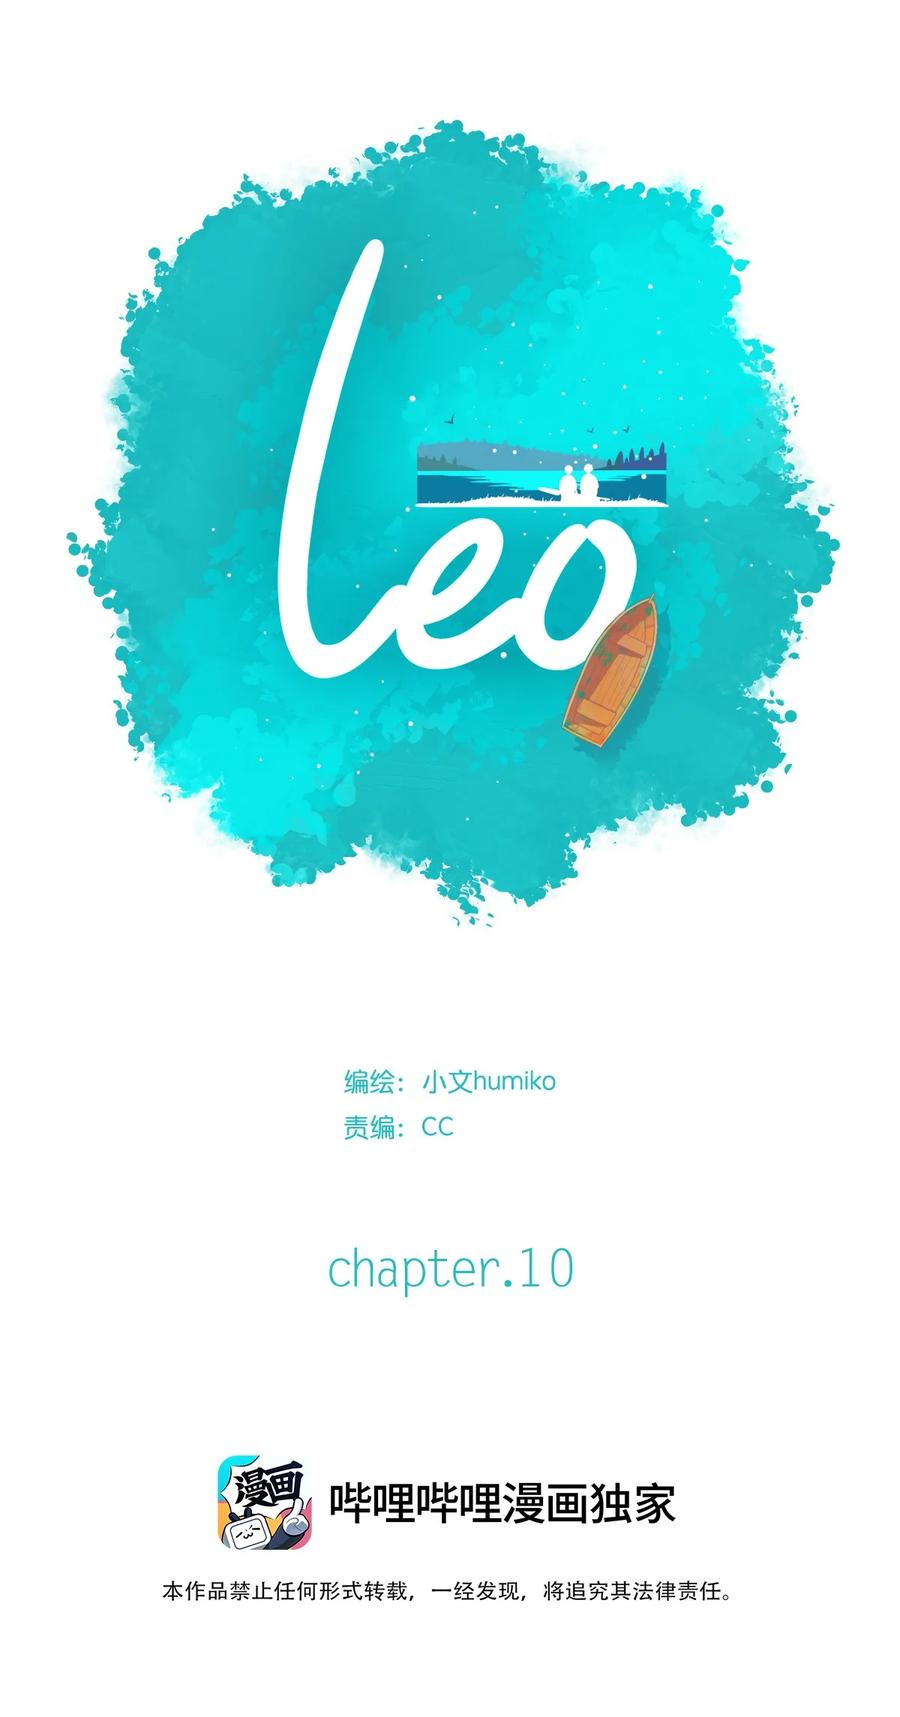 利奥 - 10 chapter.10 - 2